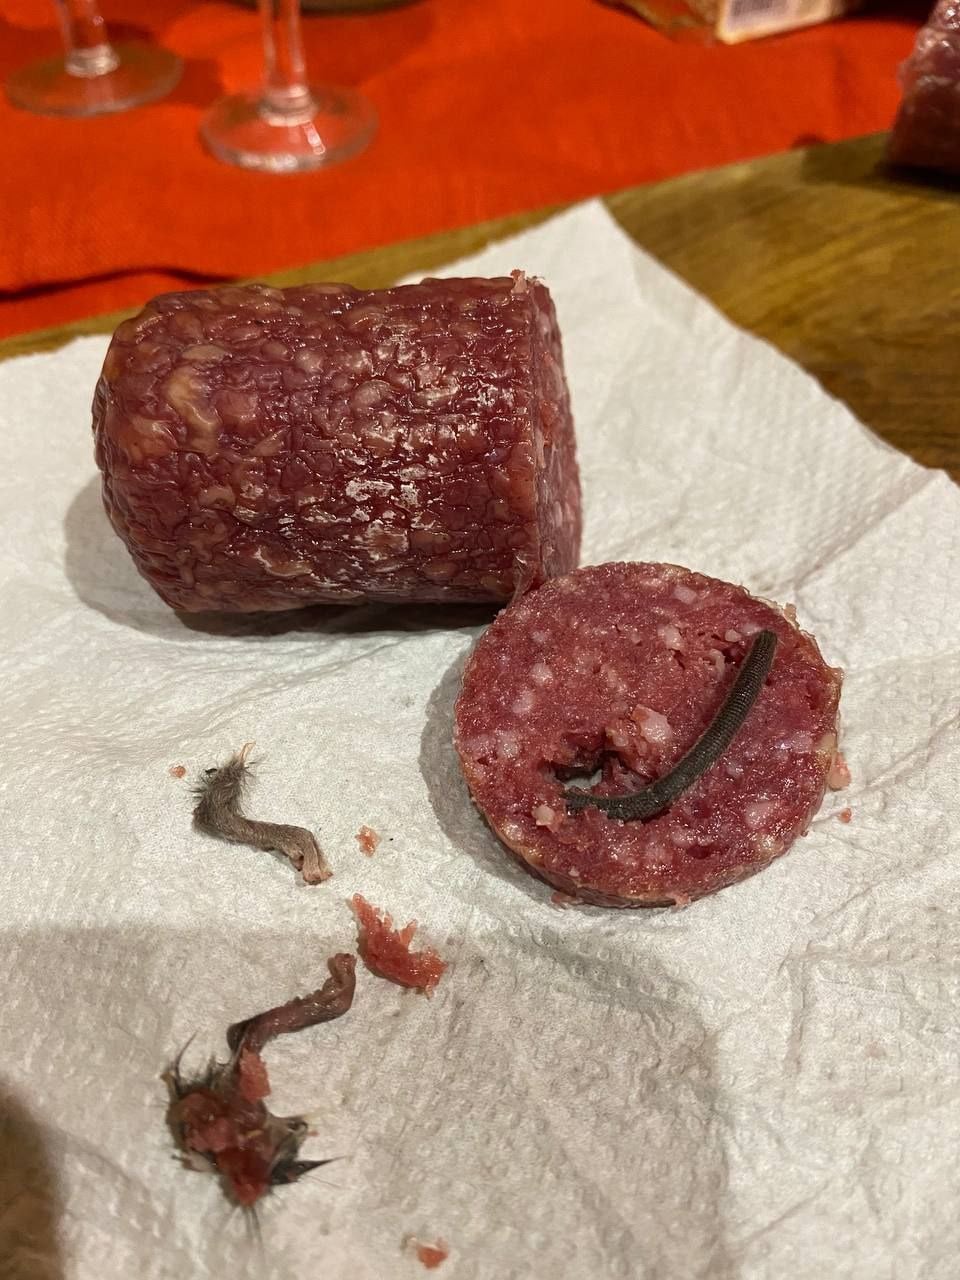 внутри купленной в Житомире колбасы оказались останки крысы